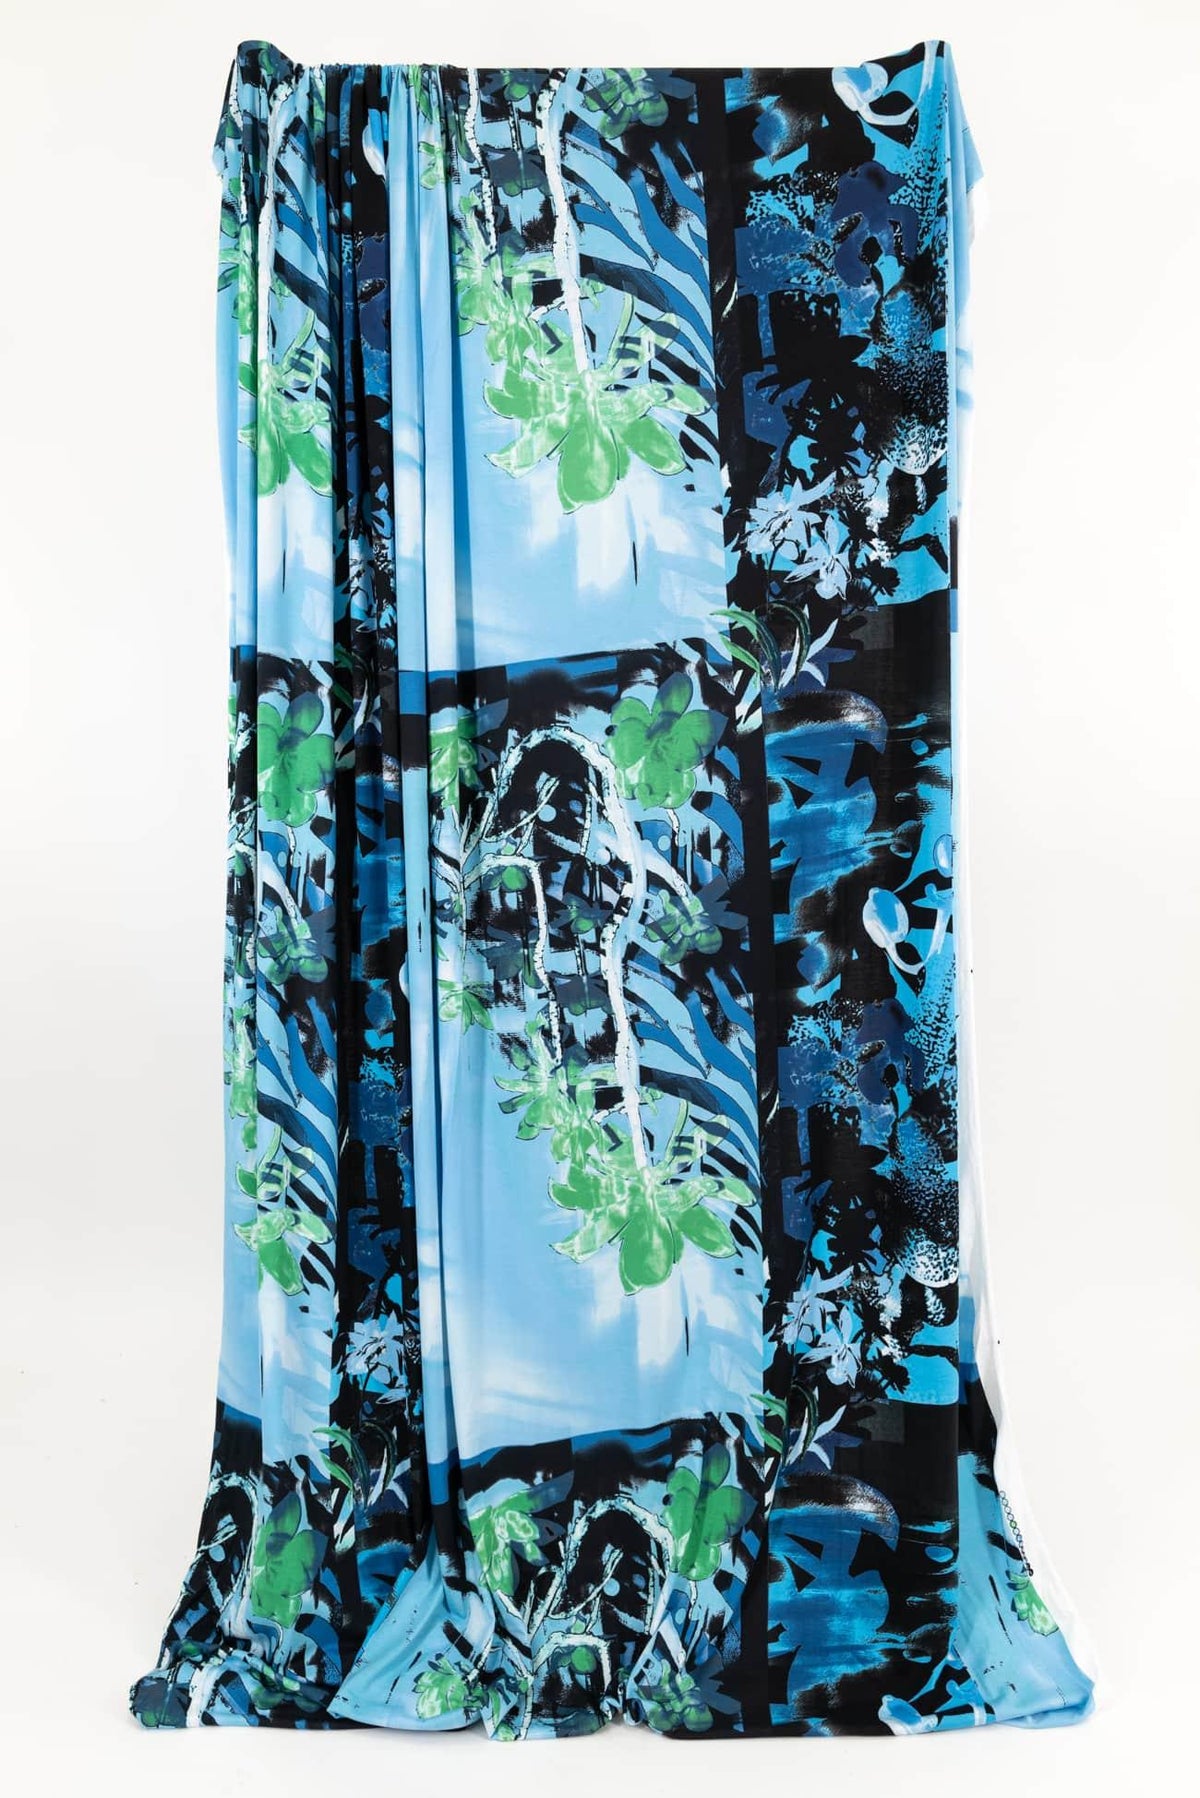 Blue Bayou Italian Knit - Marcy Tilton Fabrics